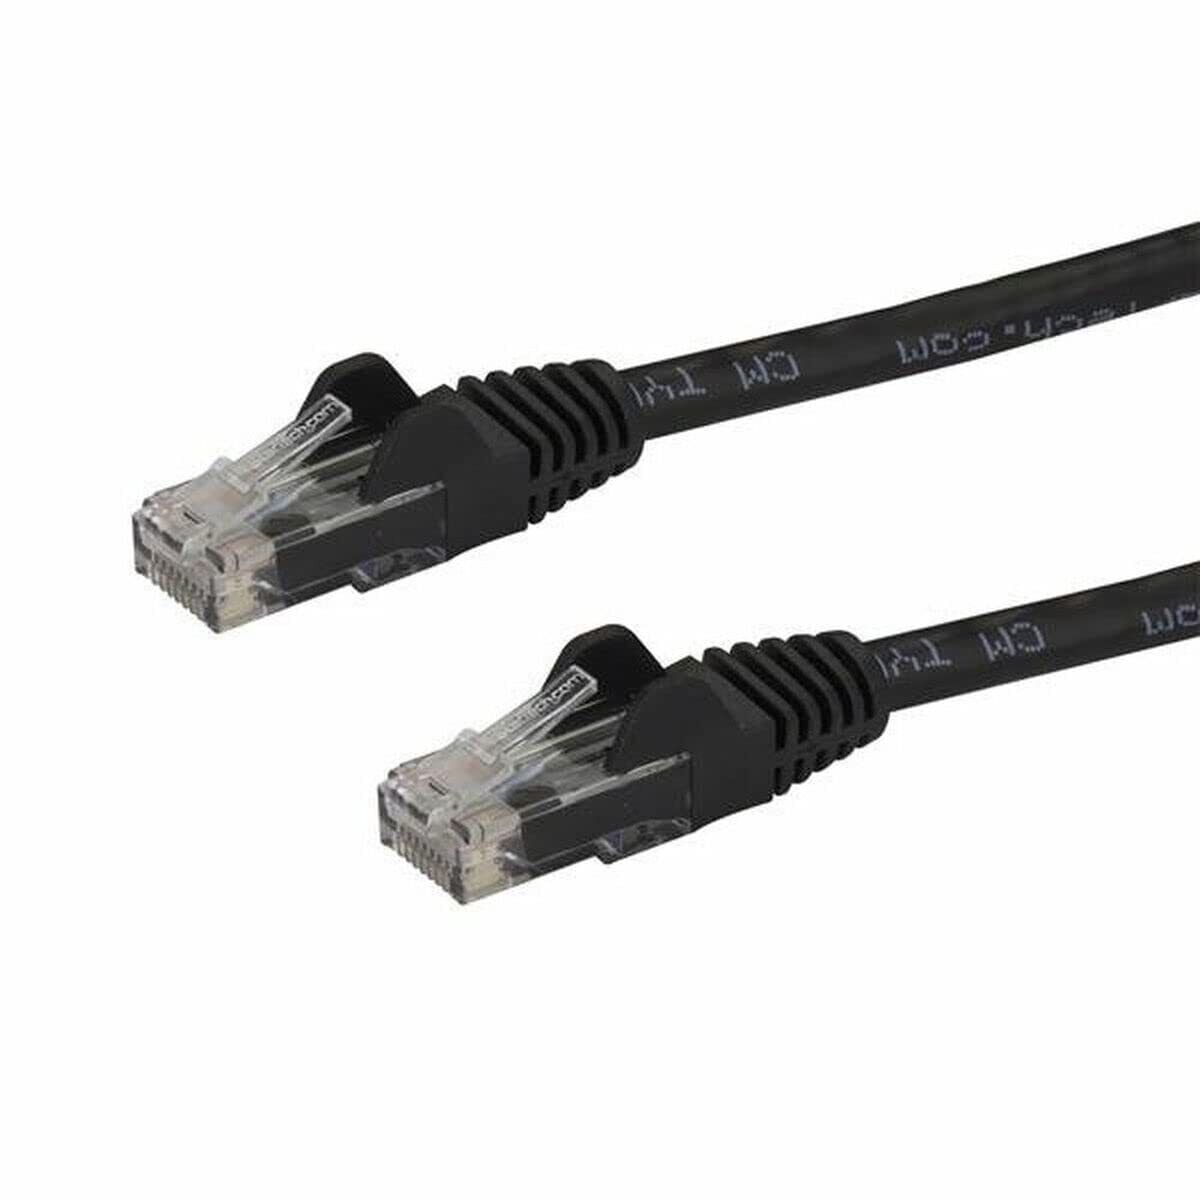 StarTech.com 5m CAT6 Ethernet Cable - Black CAT 6 Gigabit Ethernet Wire -650MHz 